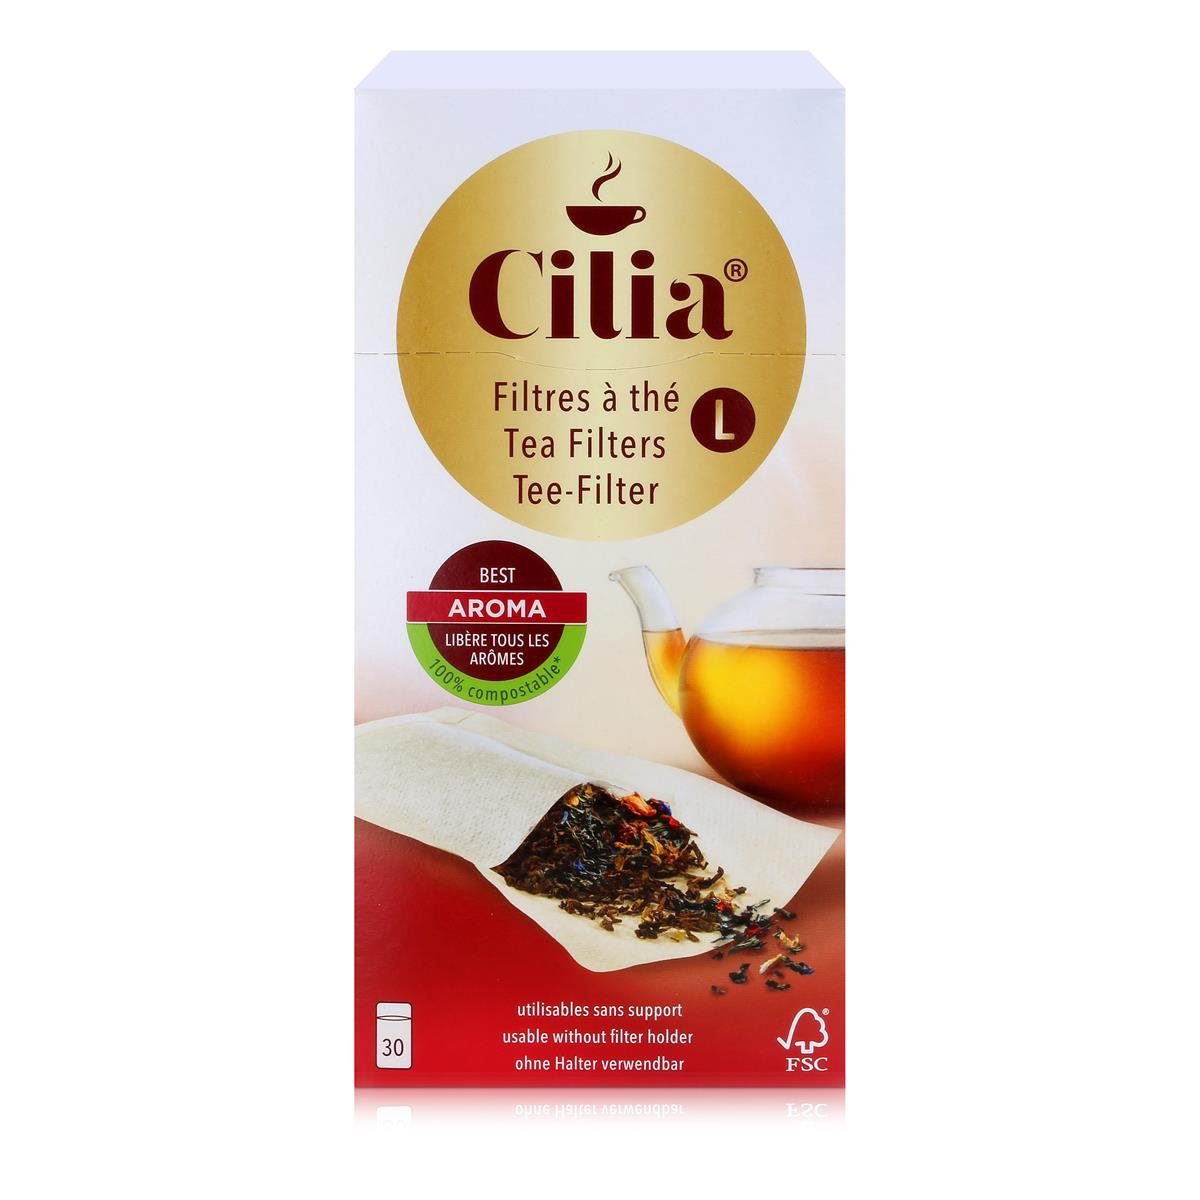 Cilia Teesieb CILIA Teefilter 30 Stk. Grösse L ohne Halter verwendbar (1er Pack) | Teesiebe